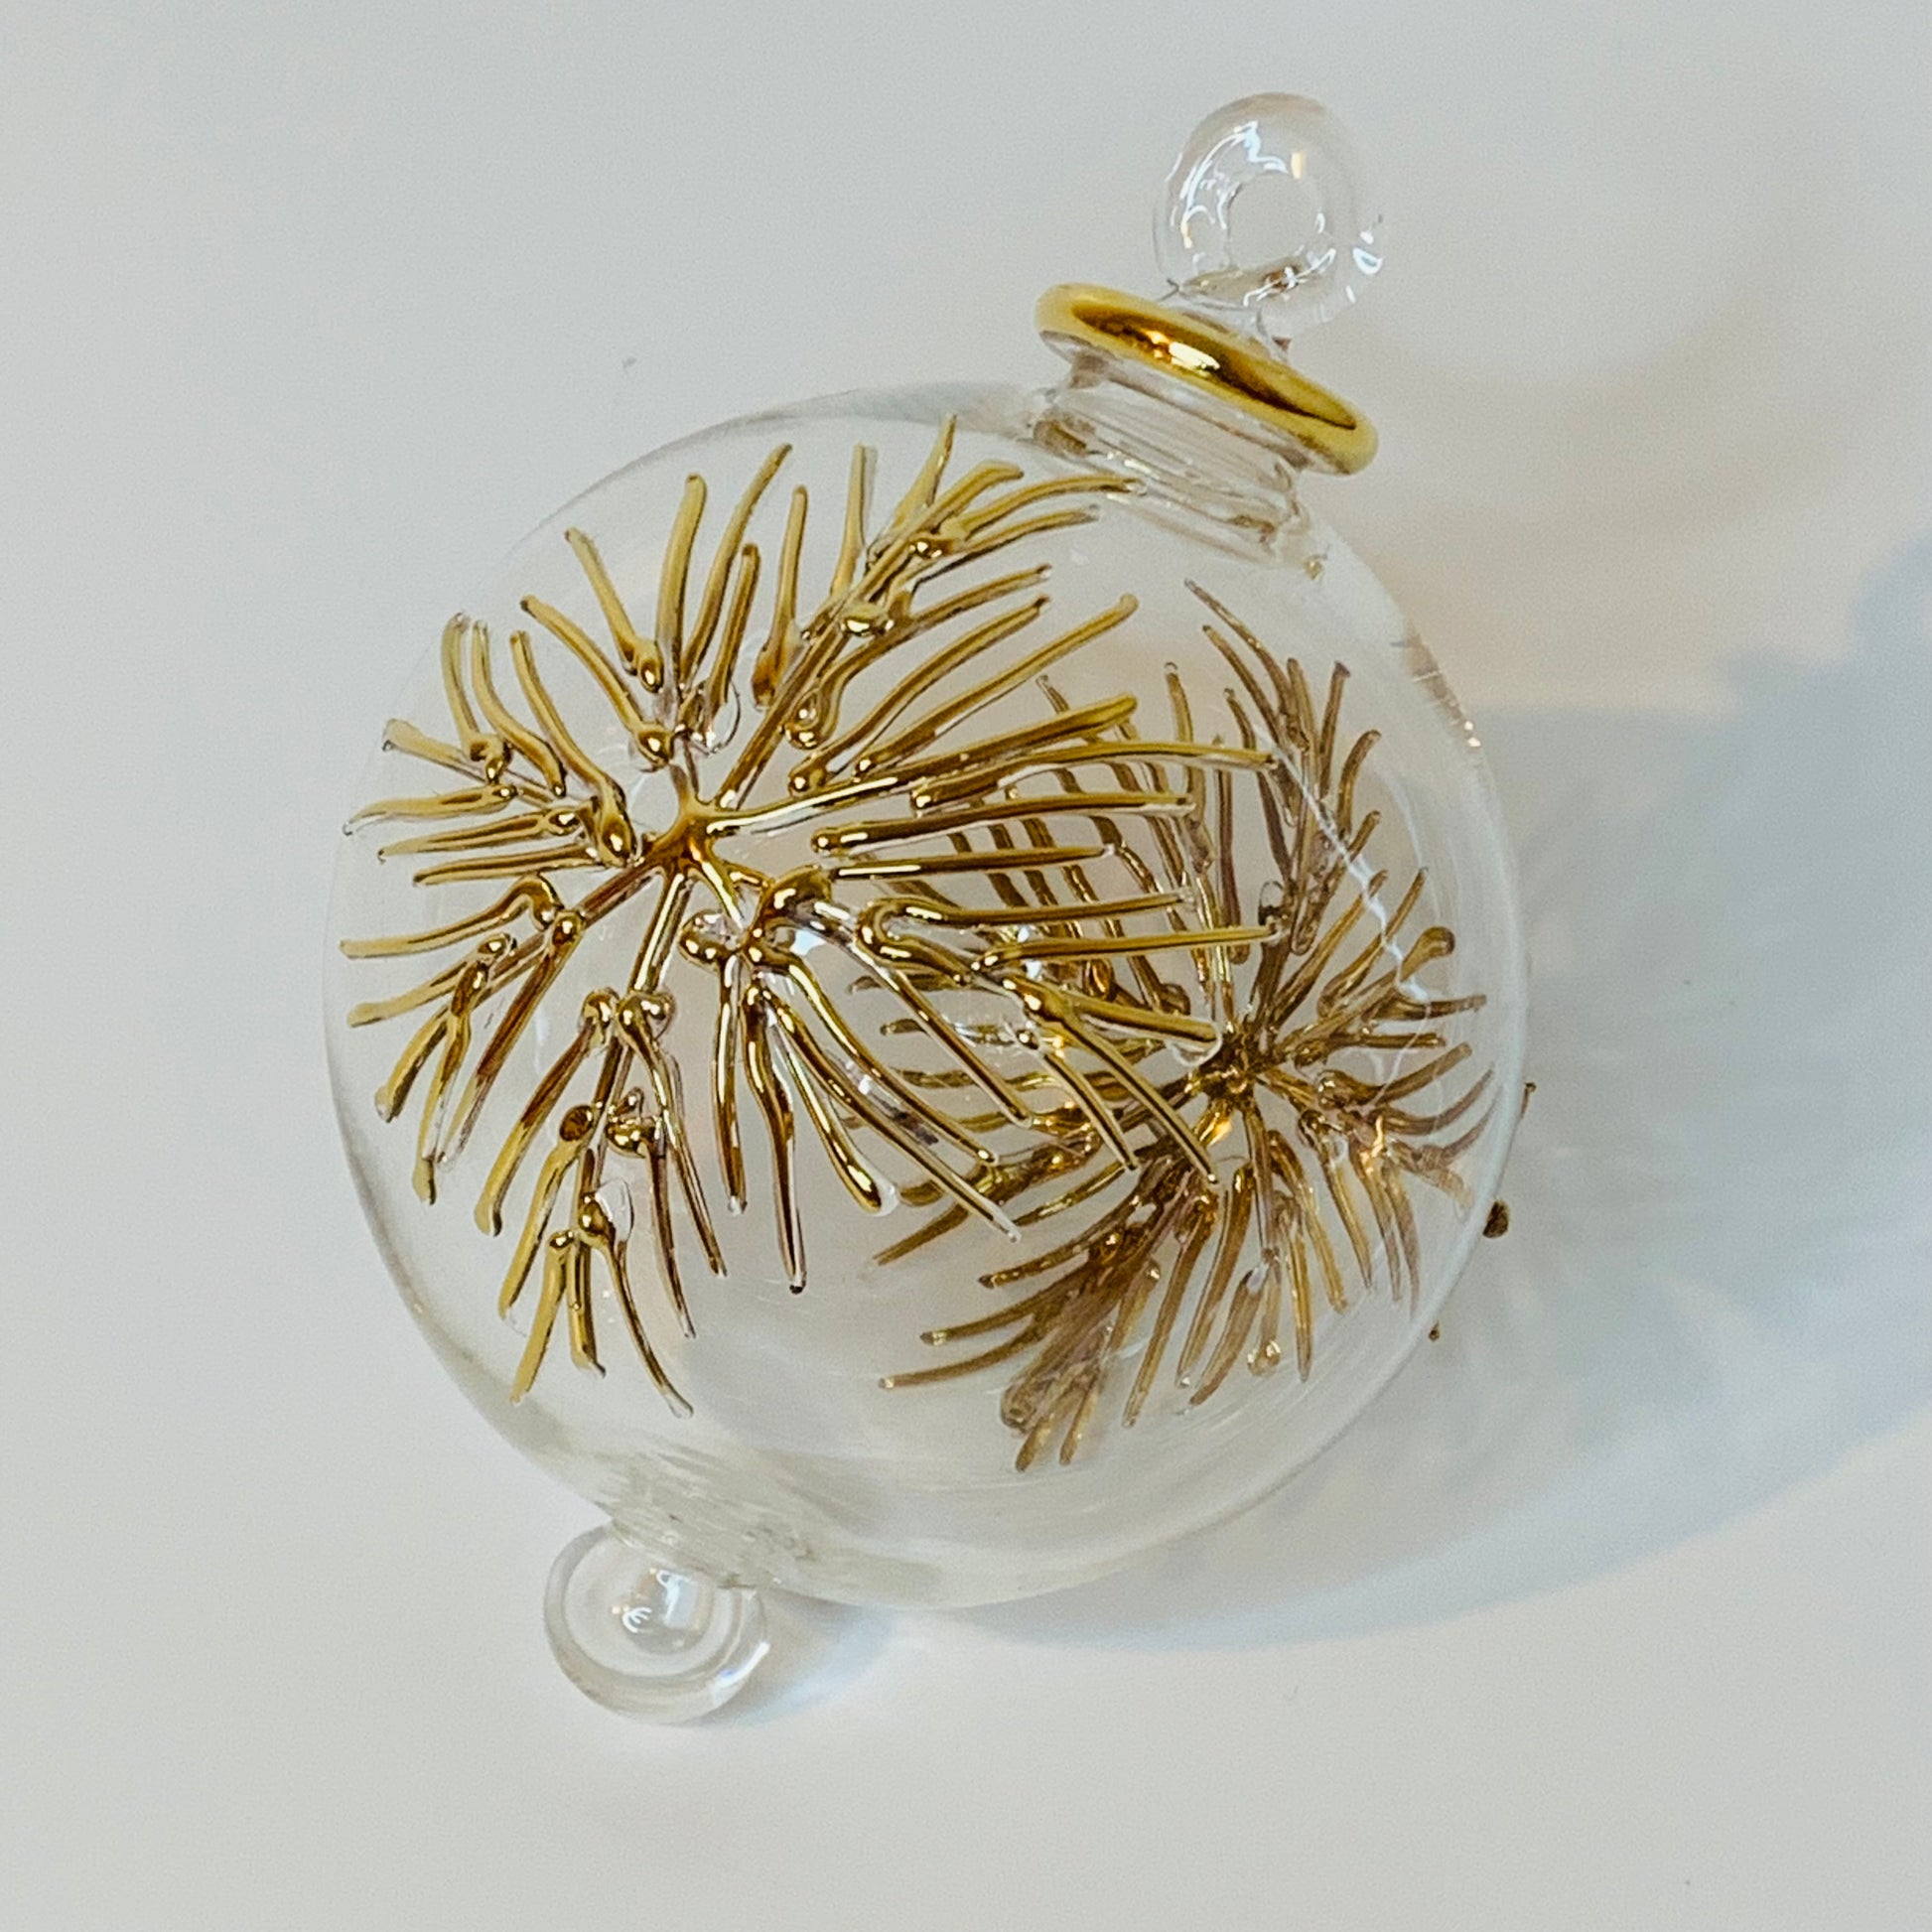 Blown Glass Ornament - Frozen Gold